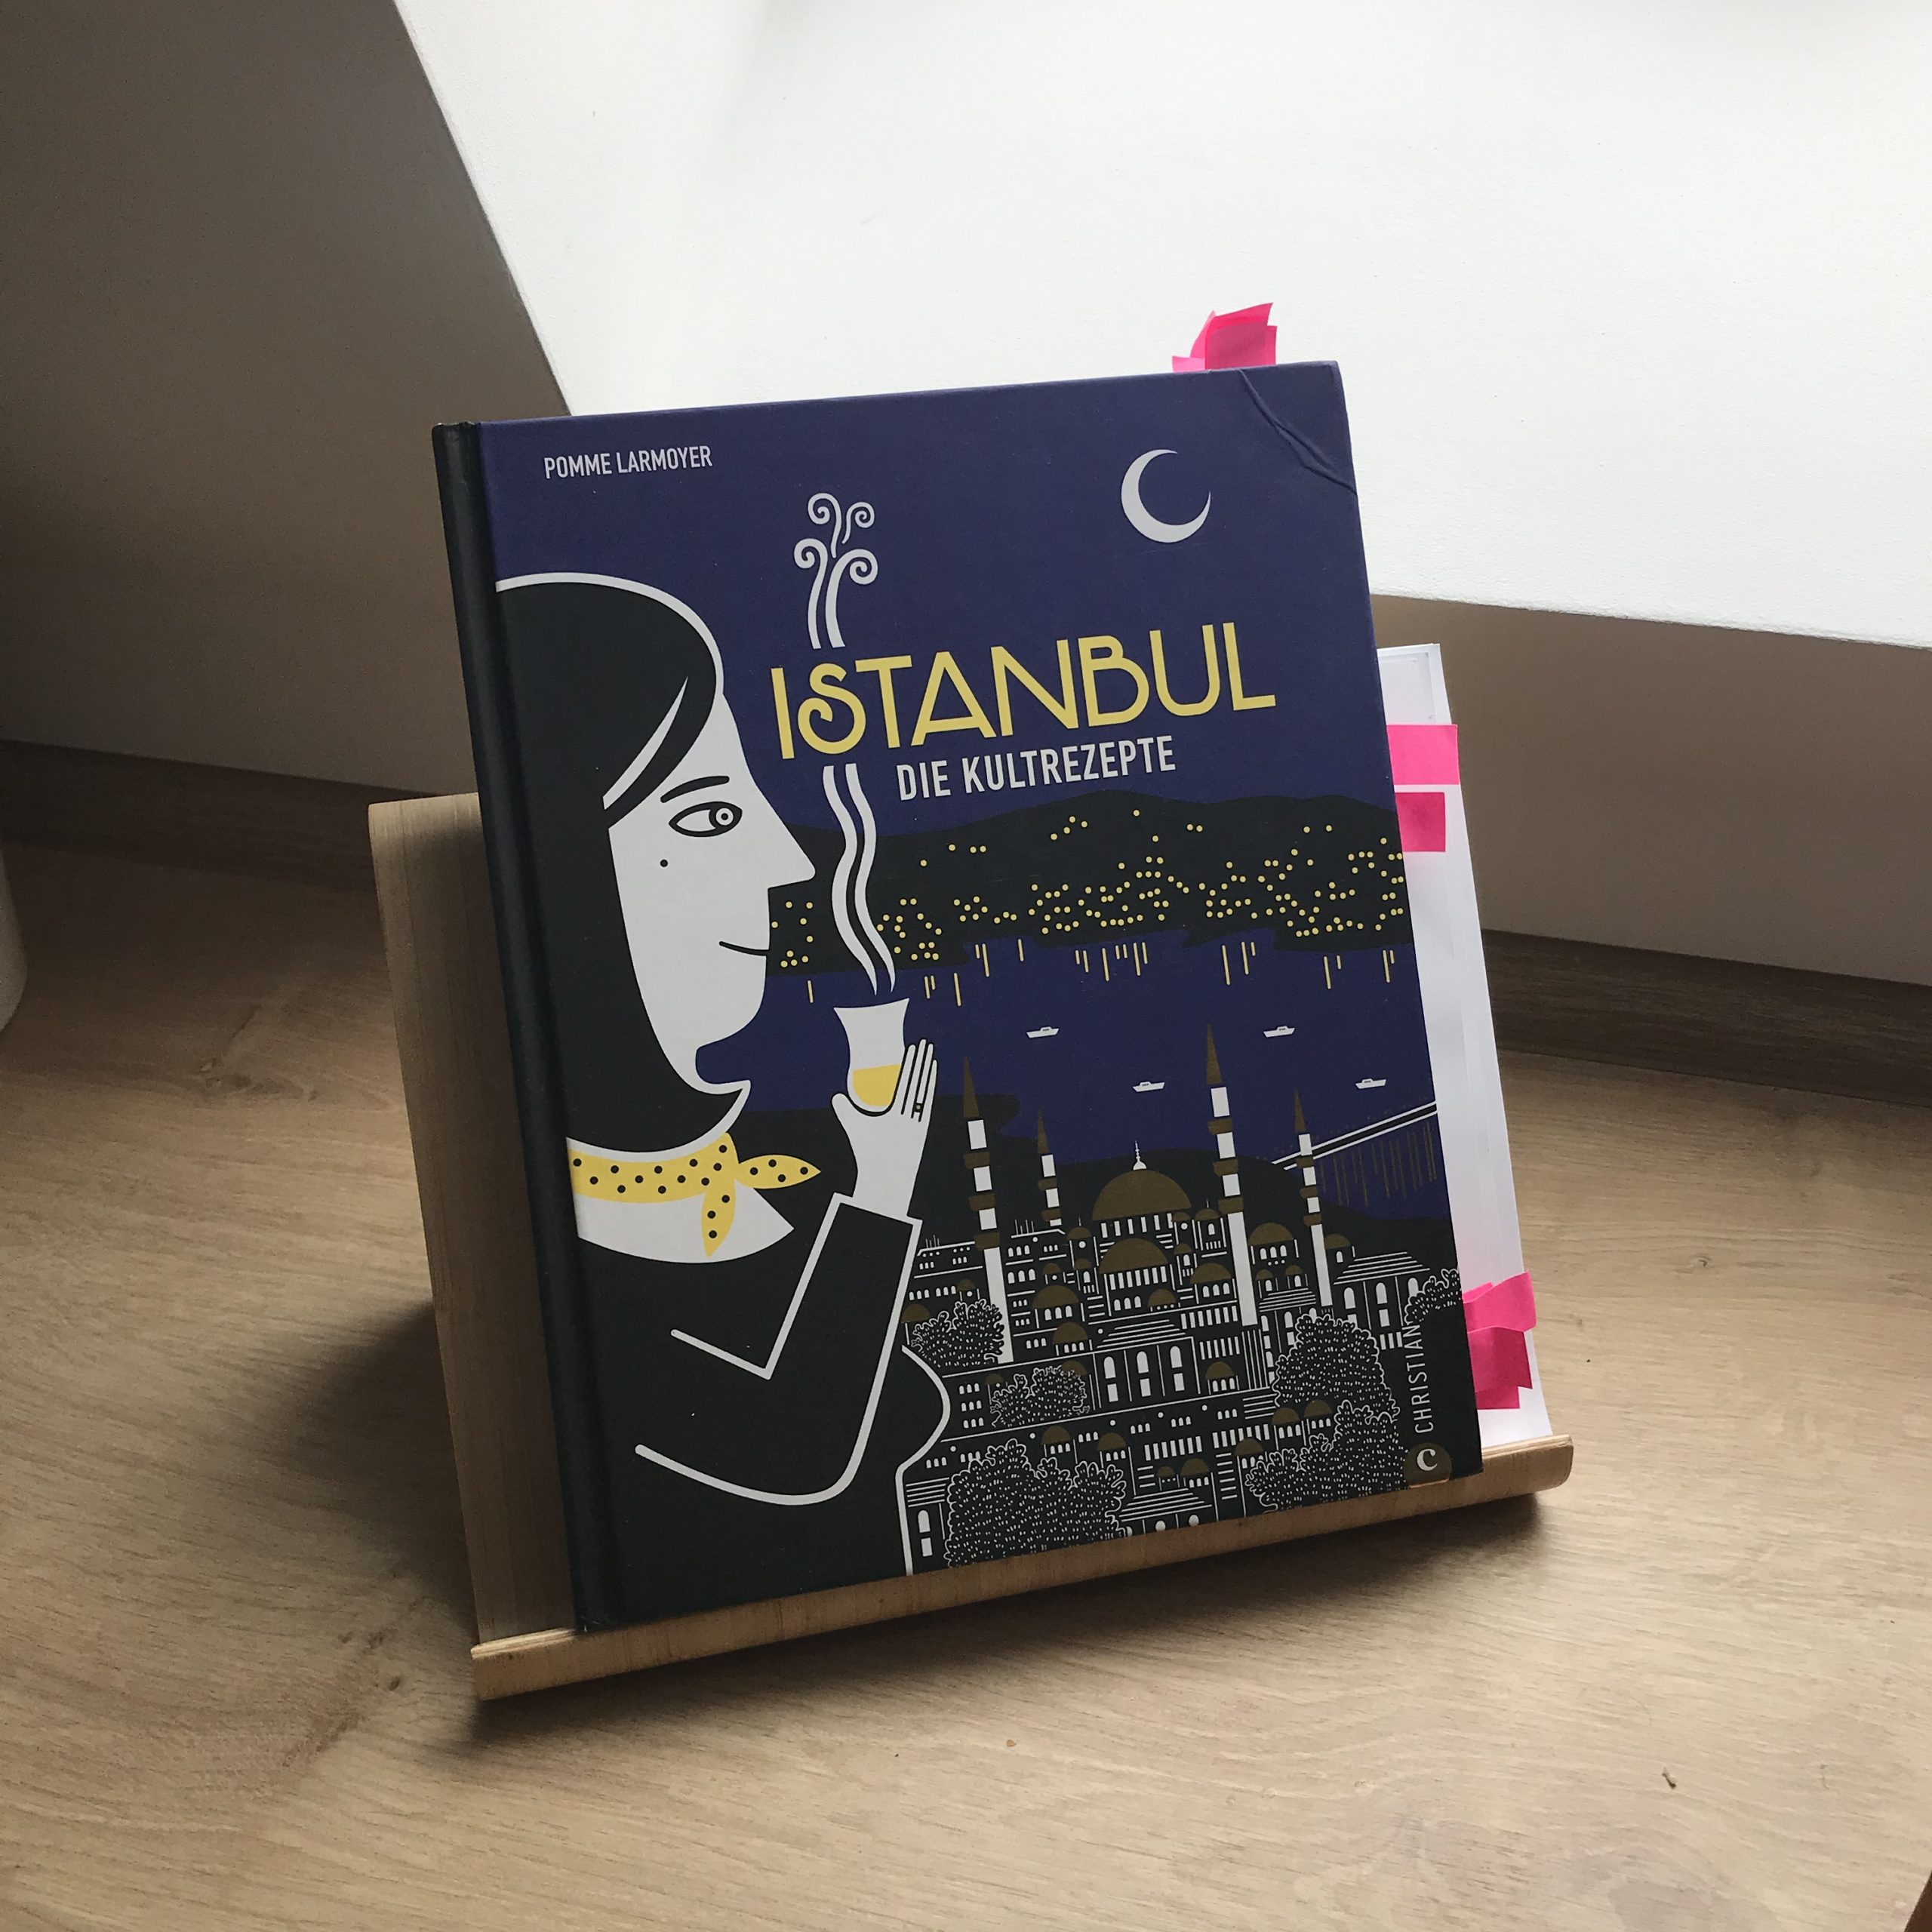 Ich teste das Kochbuch "Istanbul - Die Kultrezepte" einen Monat lang